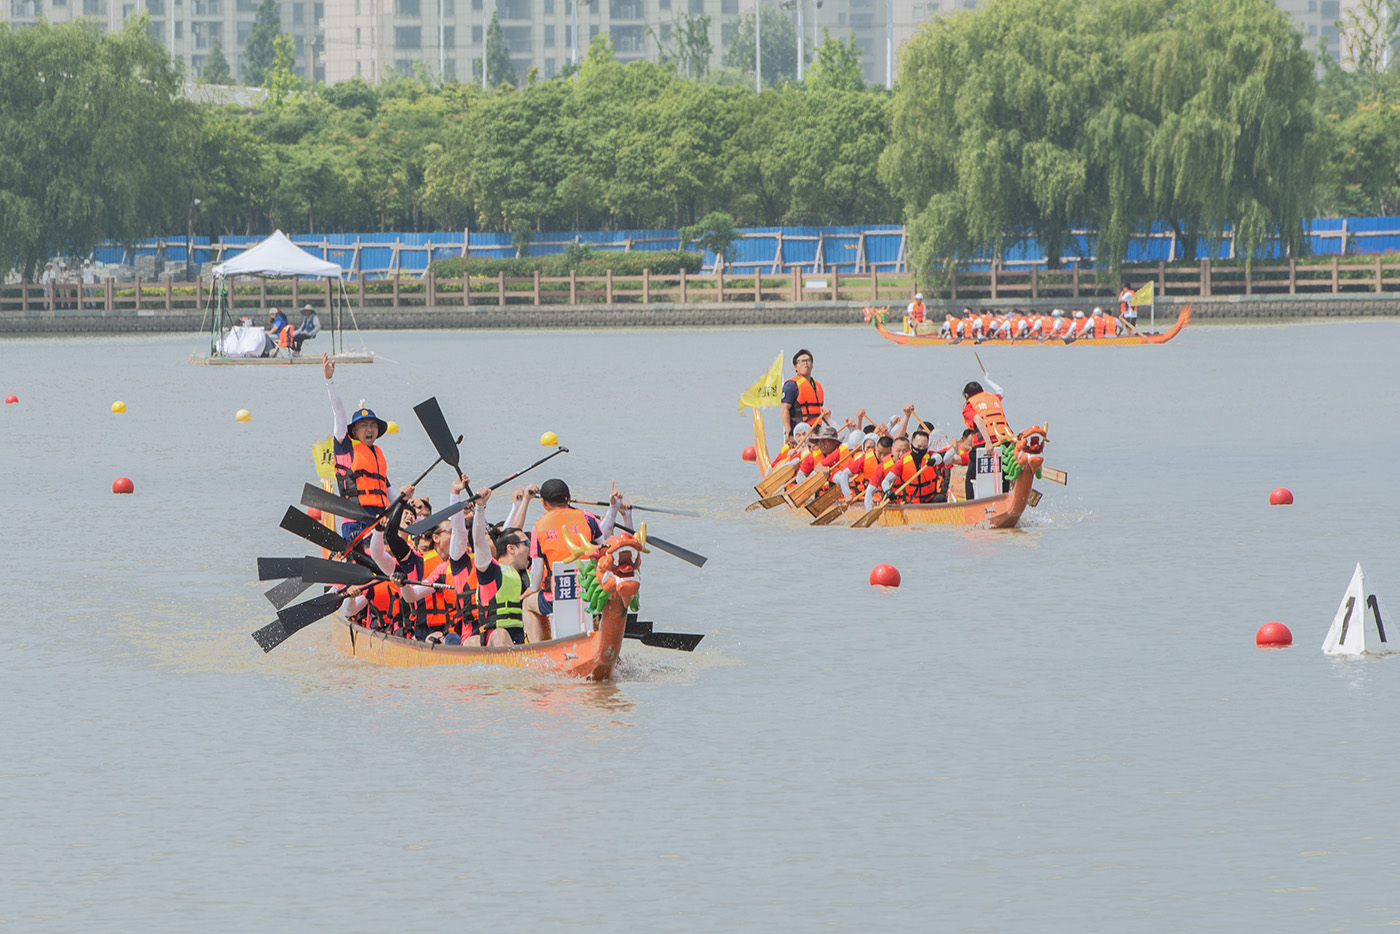 Dragon Boat Racing by Zhicai Ren